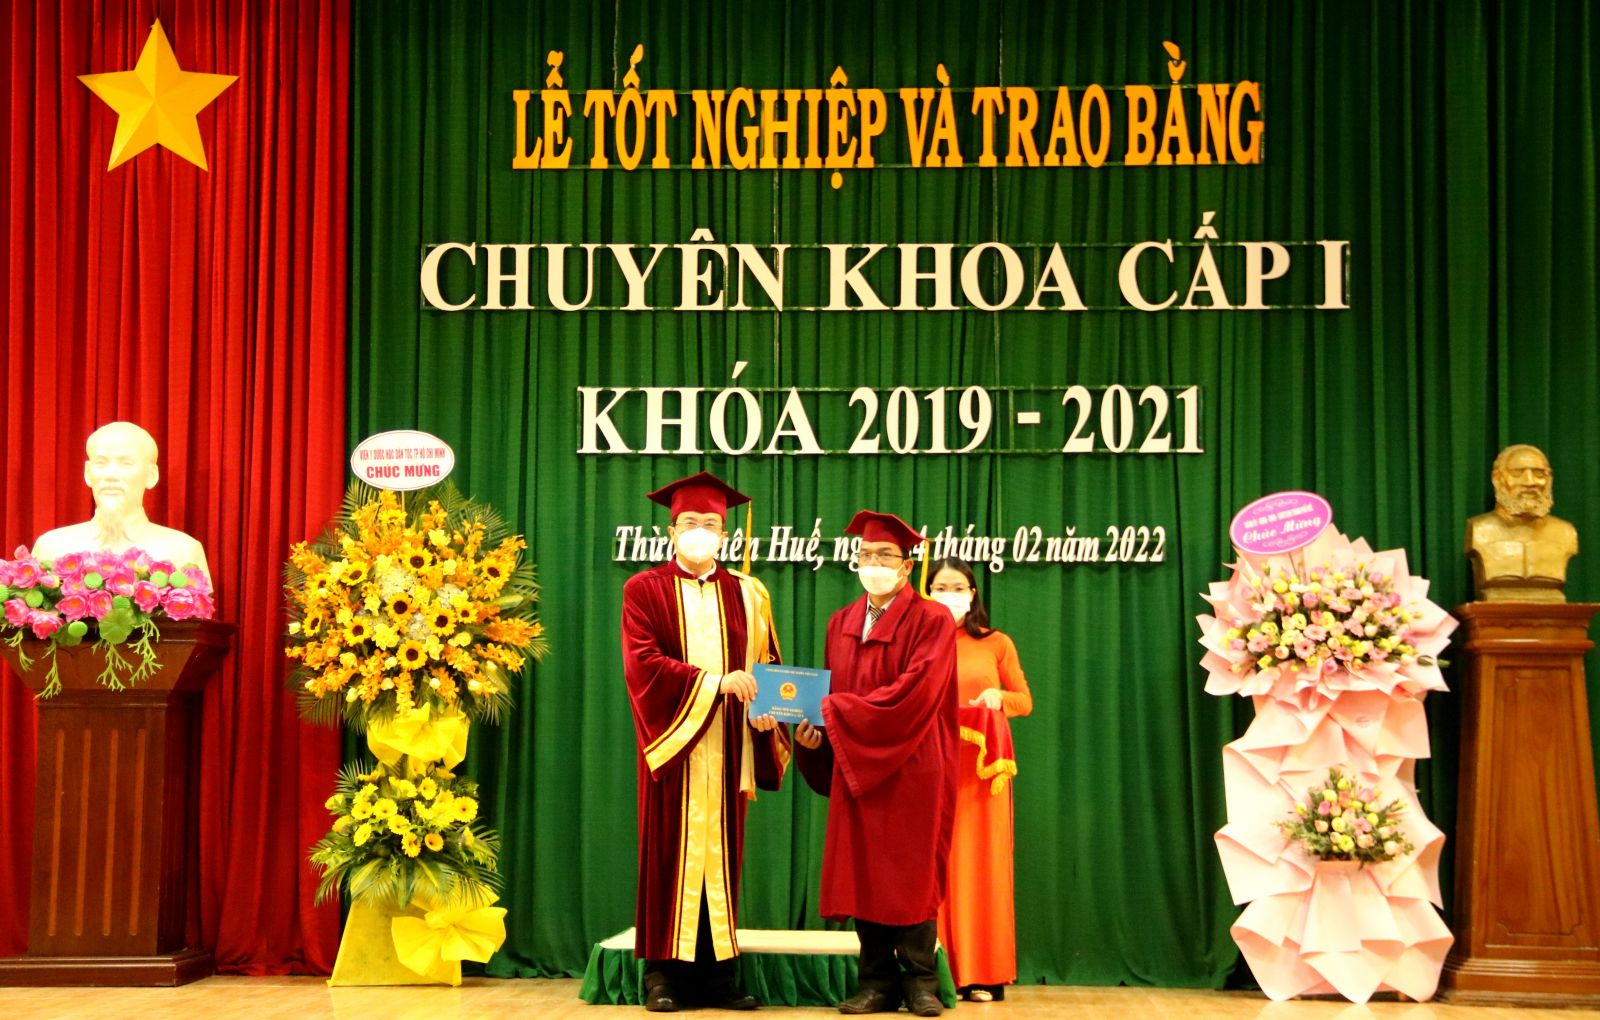 Lễ Tốt nghiệp và trao bằng Chuyên khoa cấp I khóa 2019 - 2021